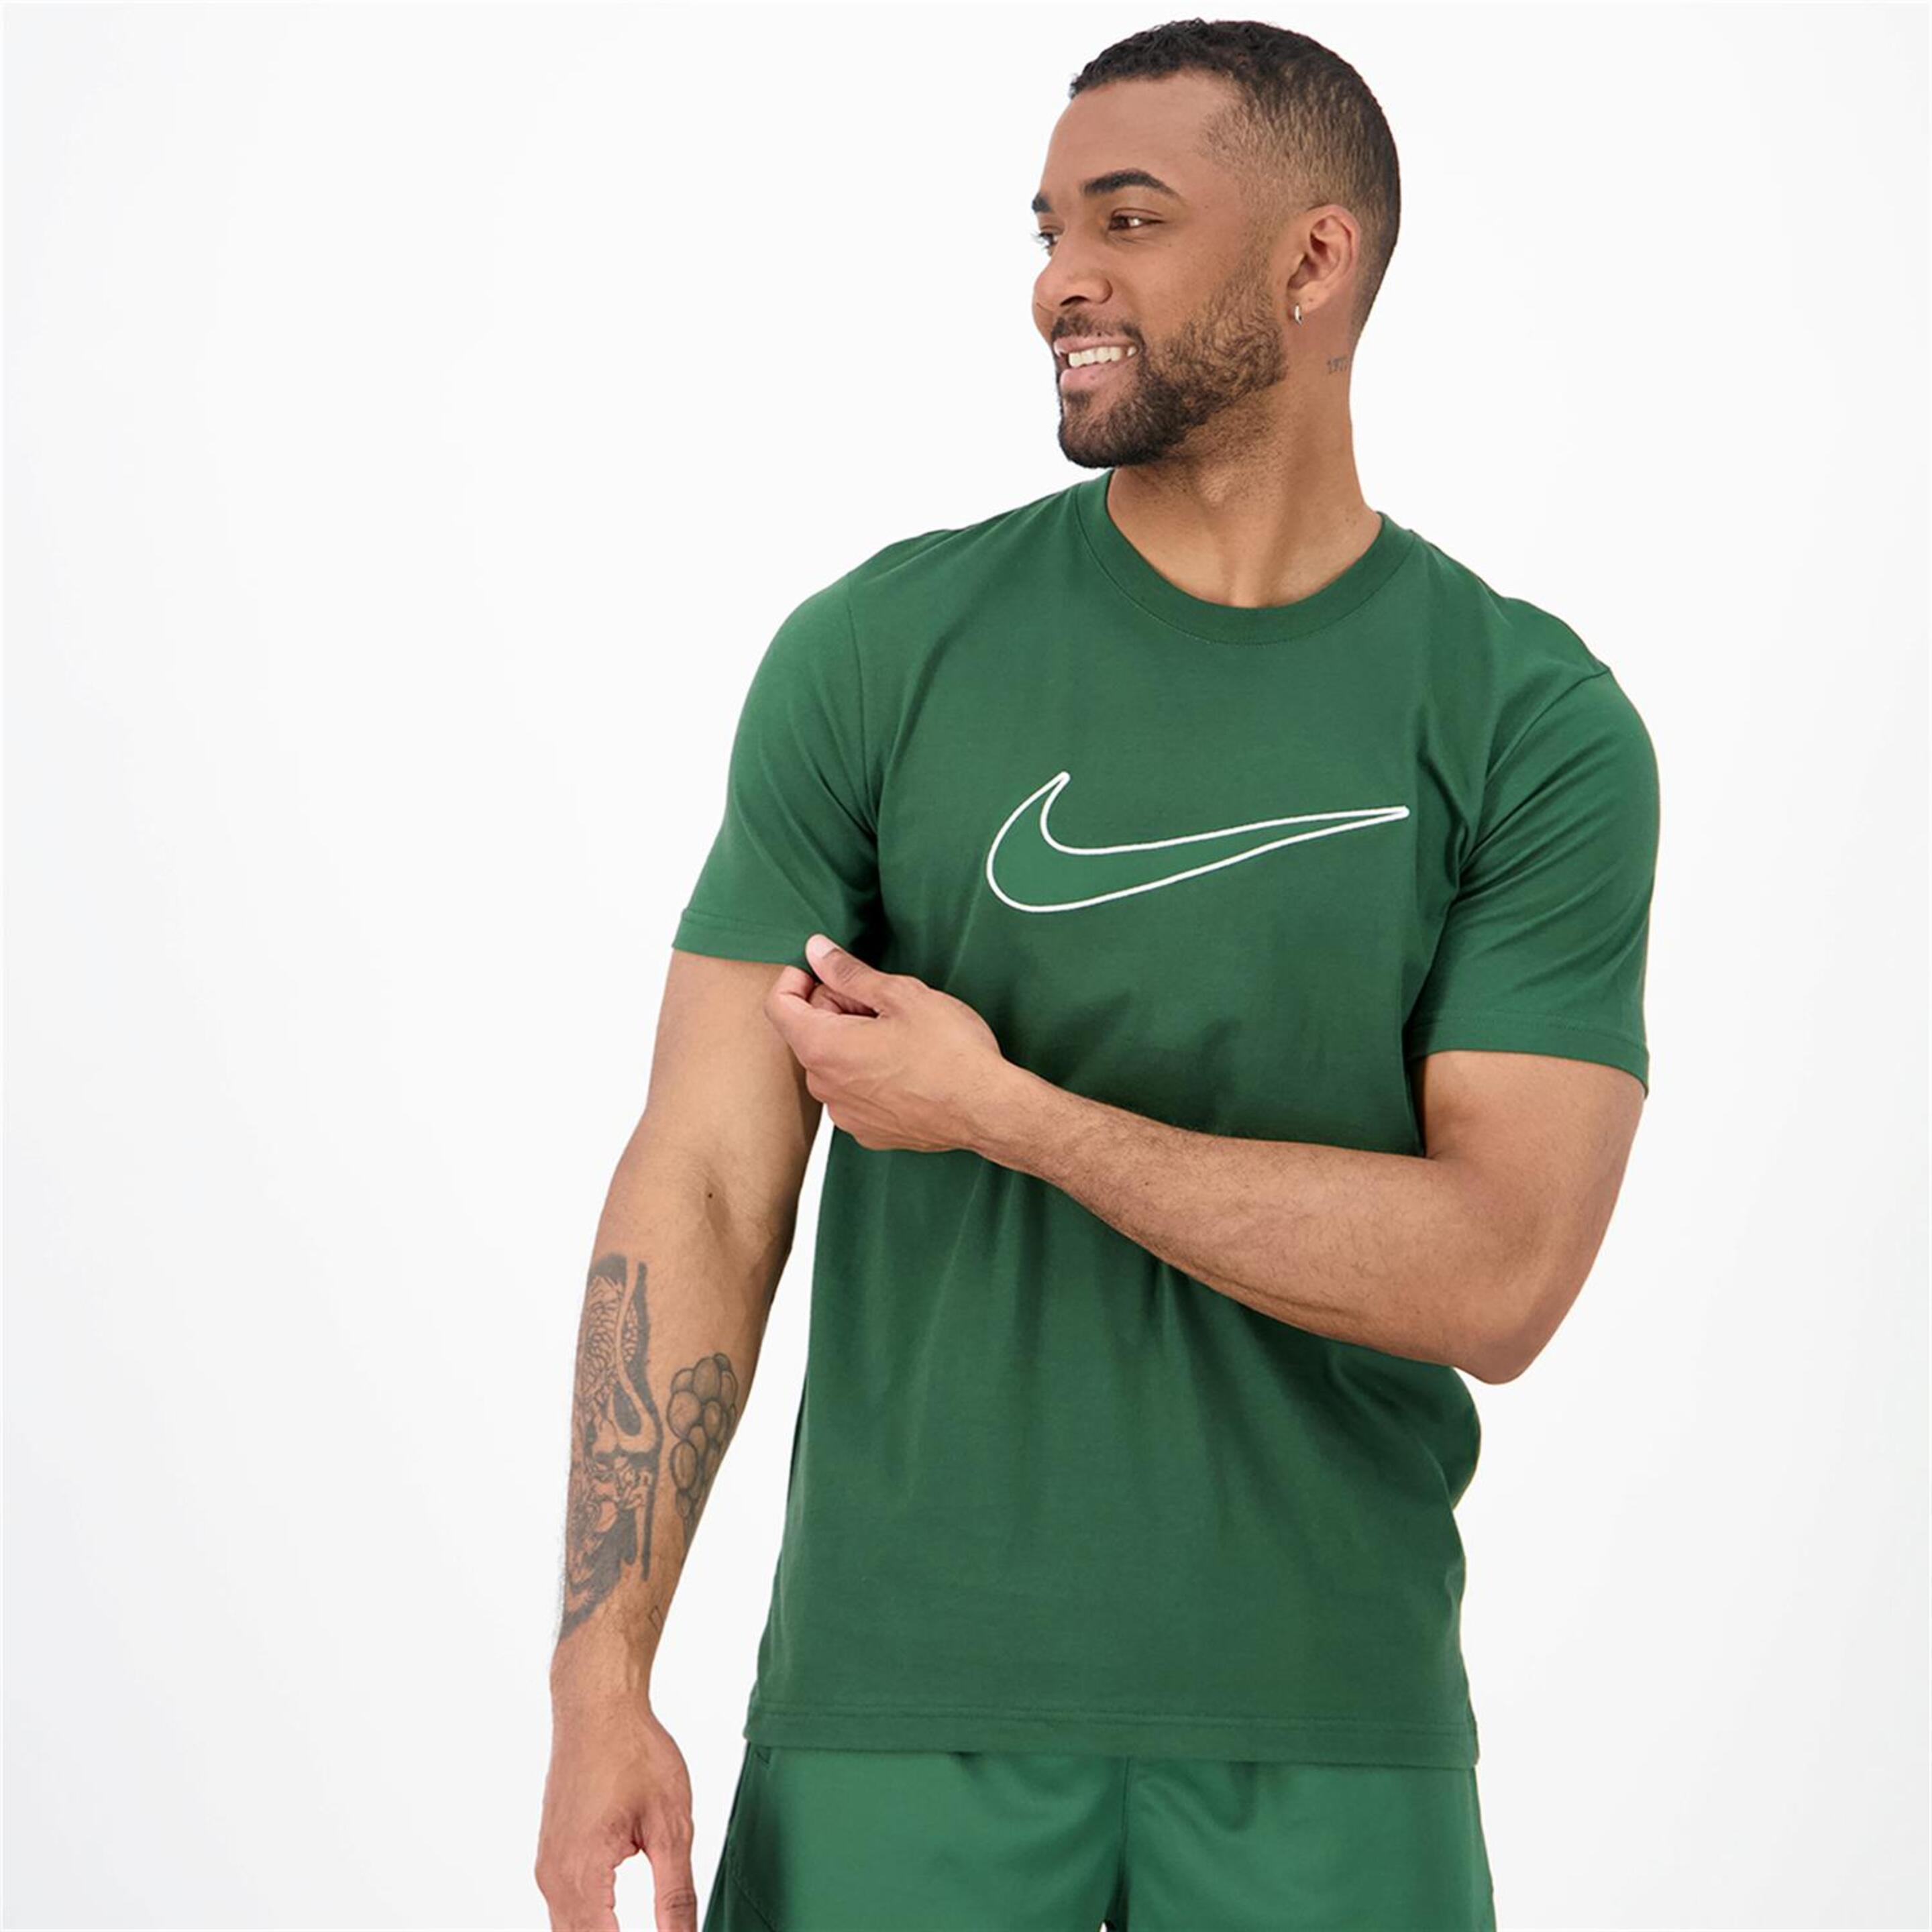 Nike Sp - verde - T-shirt Homem